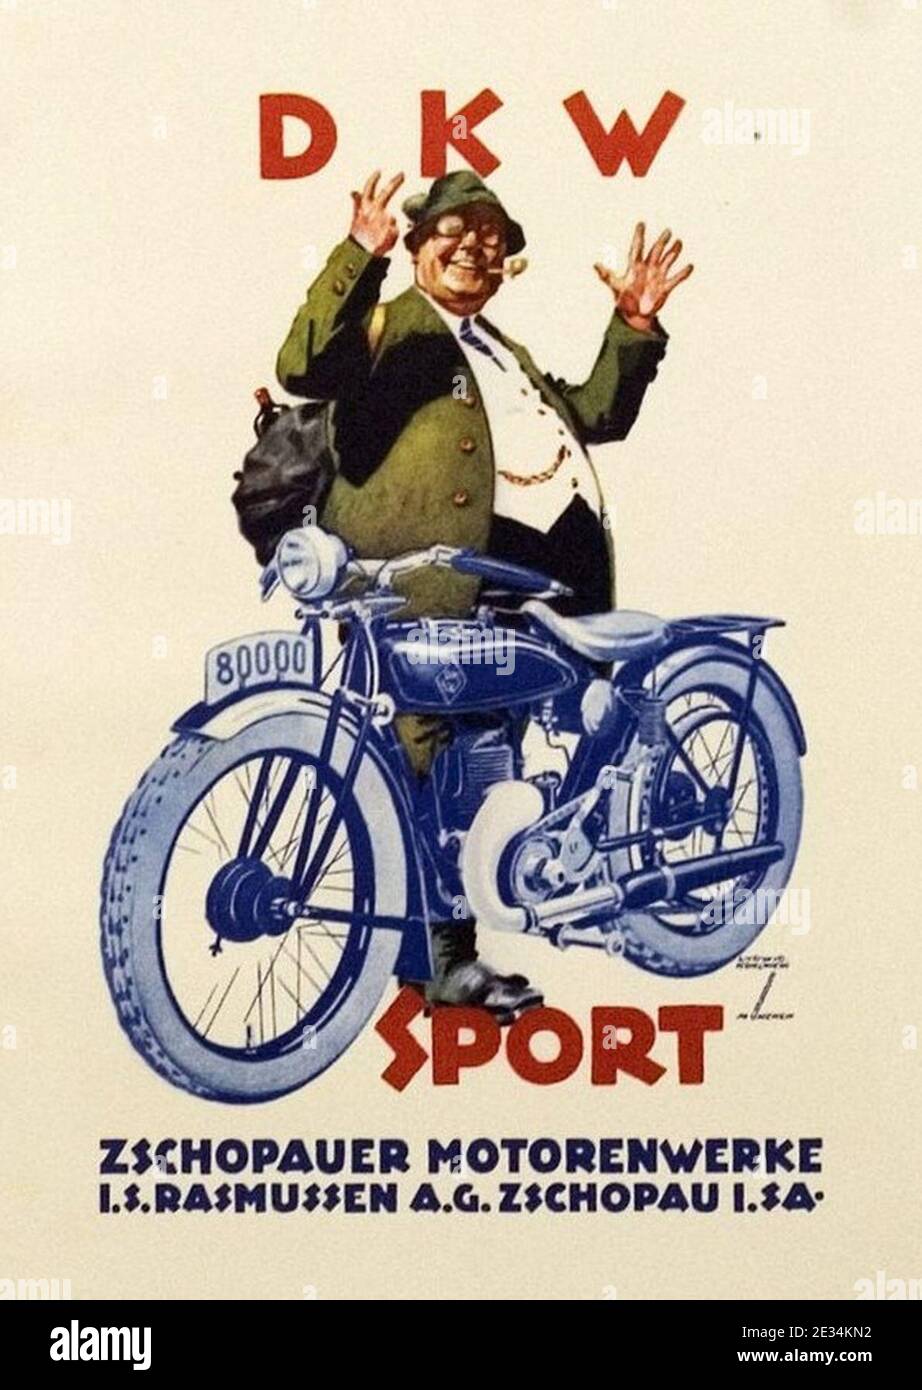 Ludwig Hohlwein - DKW SPORT Zschopauer Motorenwerke, 1926. Stock Photo